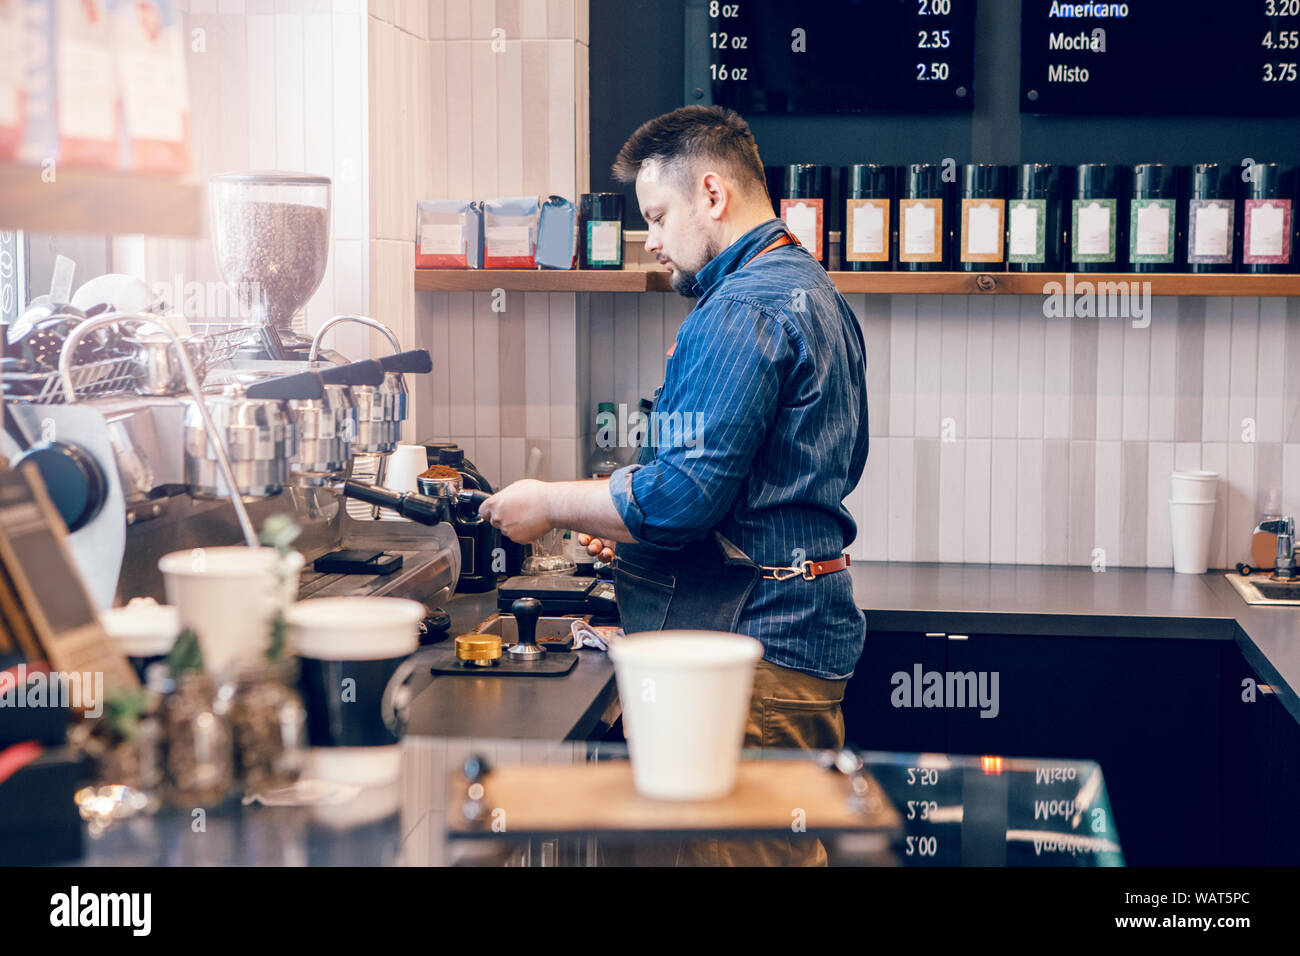 Hombre caucásico barista haciendo espresso cappuccino bebida caliente. Camarero empleador cocinar en cafe bar restaurante. Concepto de negocio local pequeño. Interior des Foto de stock